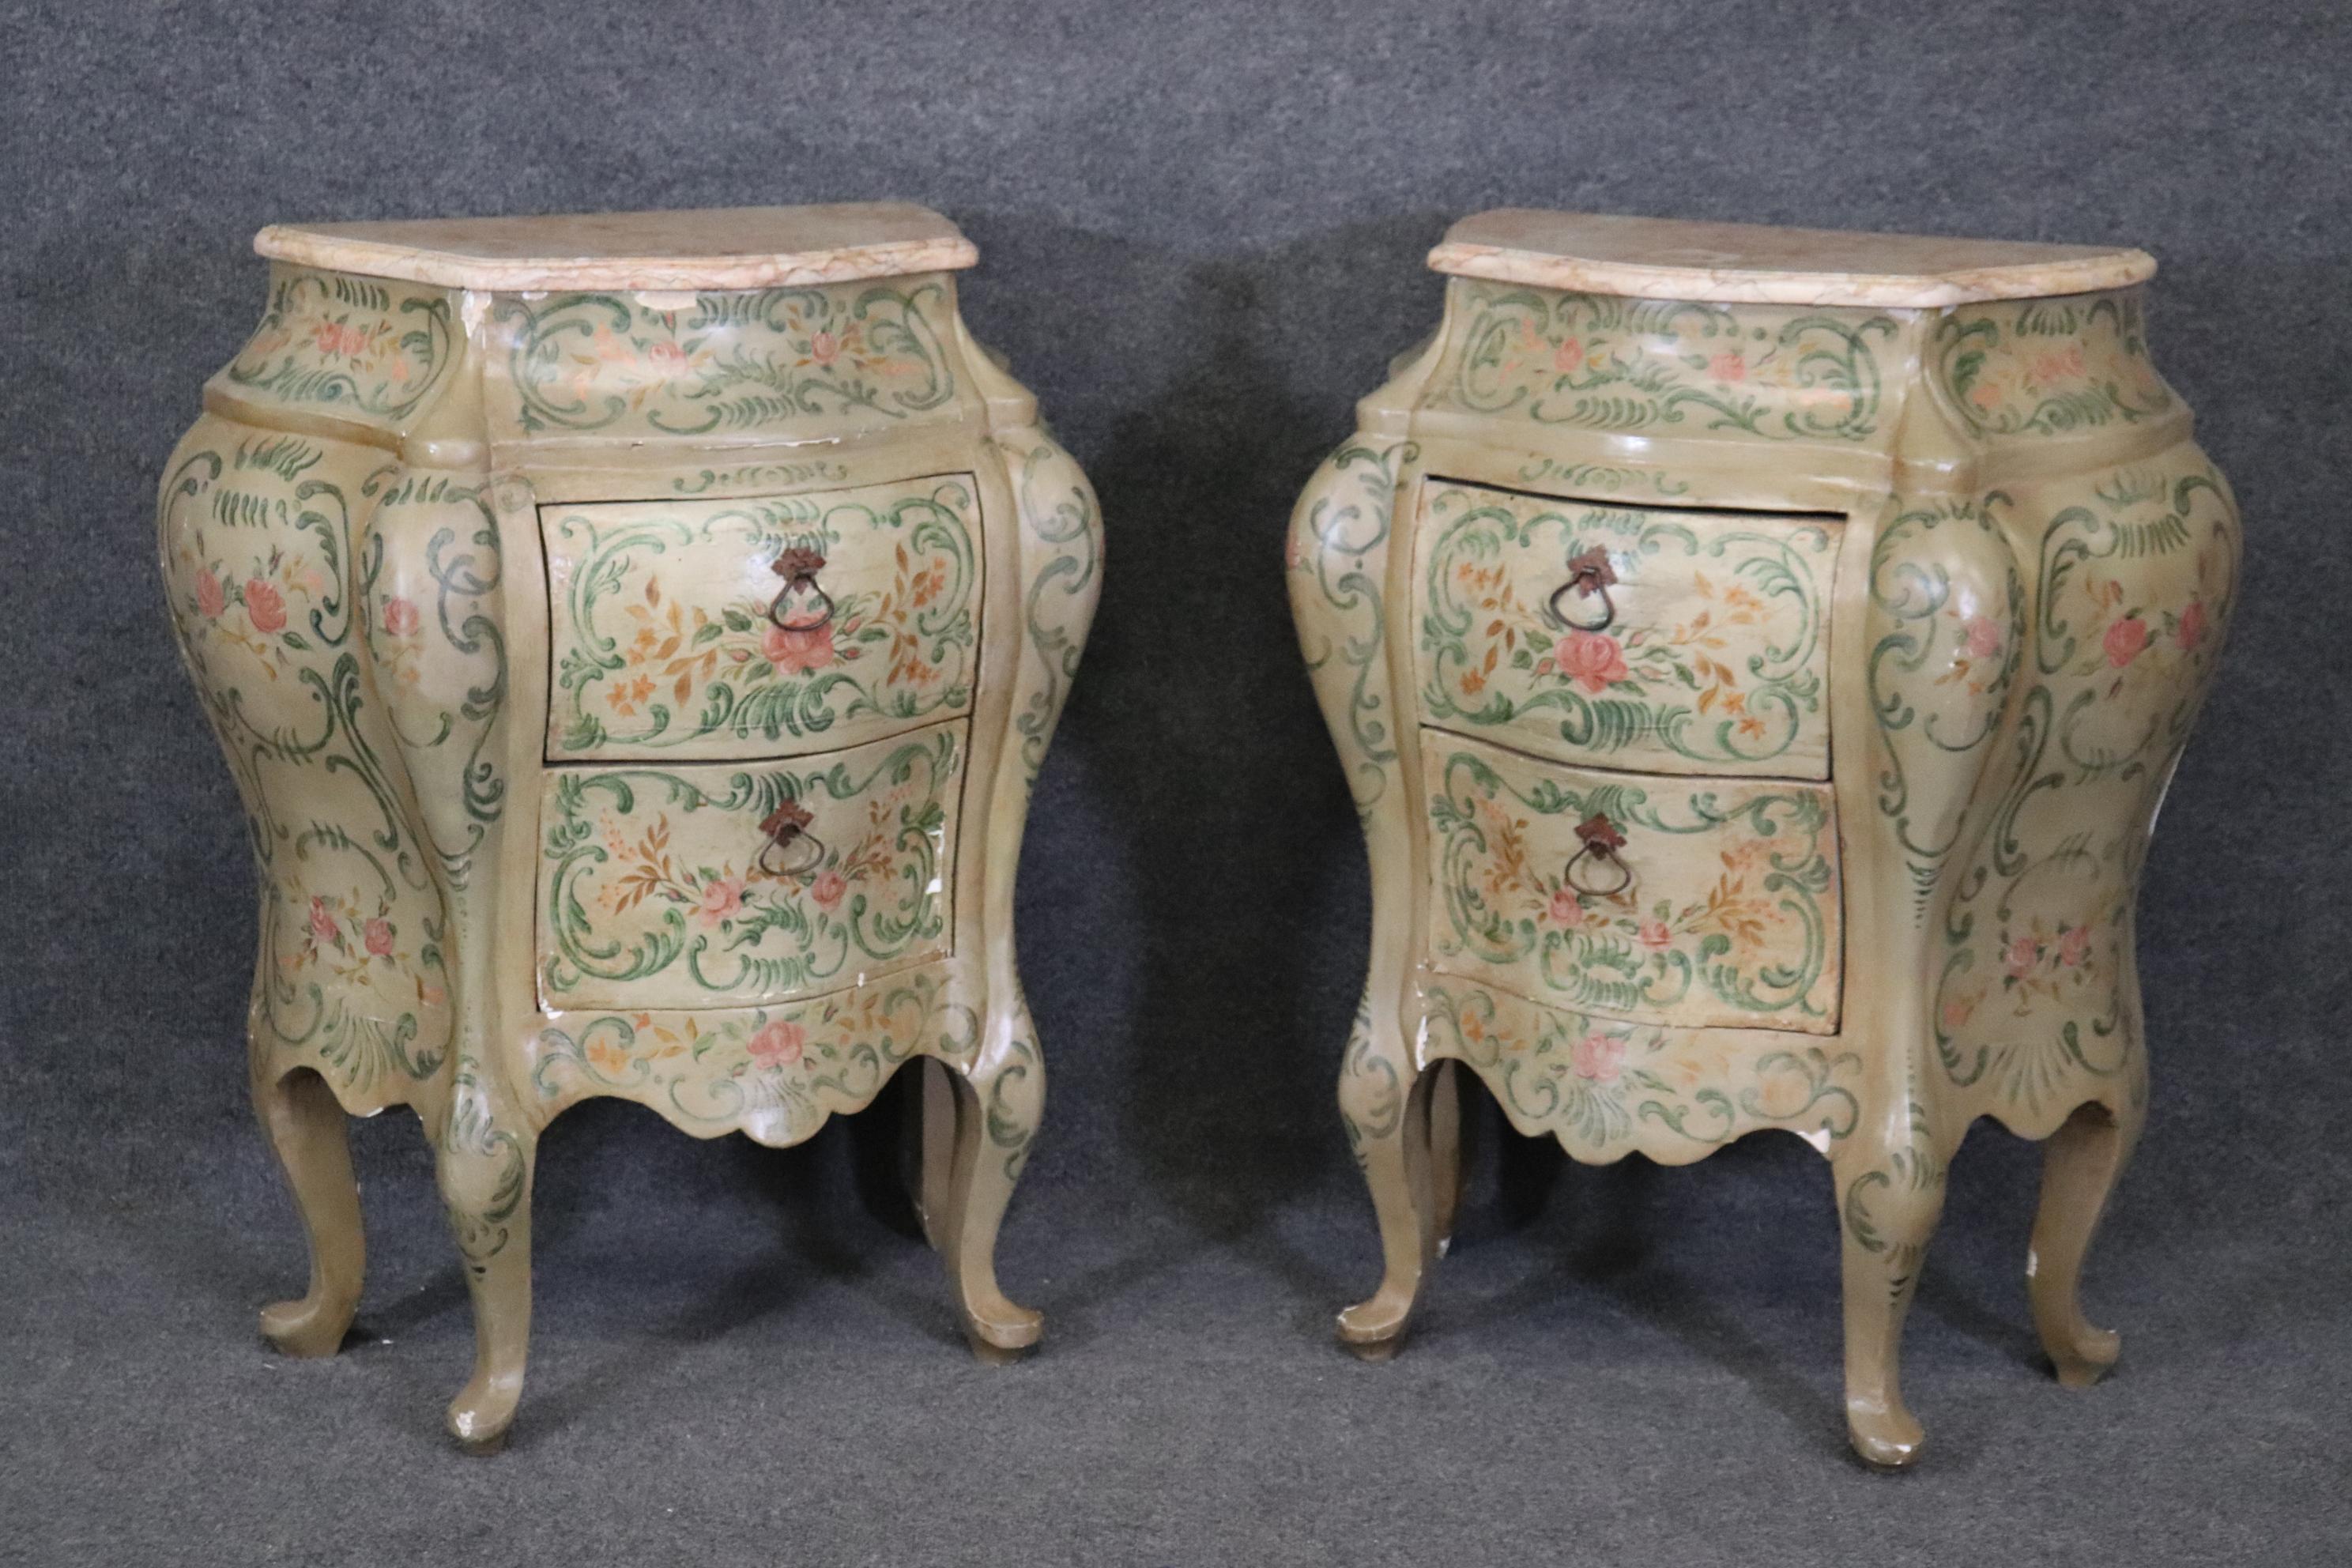 Il s'agit d'une paire extrêmement rare de tables de nuit originales décorées à la main avec de la peinture vénitienne. Ils sont en bon état avec quelques finitions mineures, comme on peut s'y attendre compte tenu de leur âge avancé. Les supports